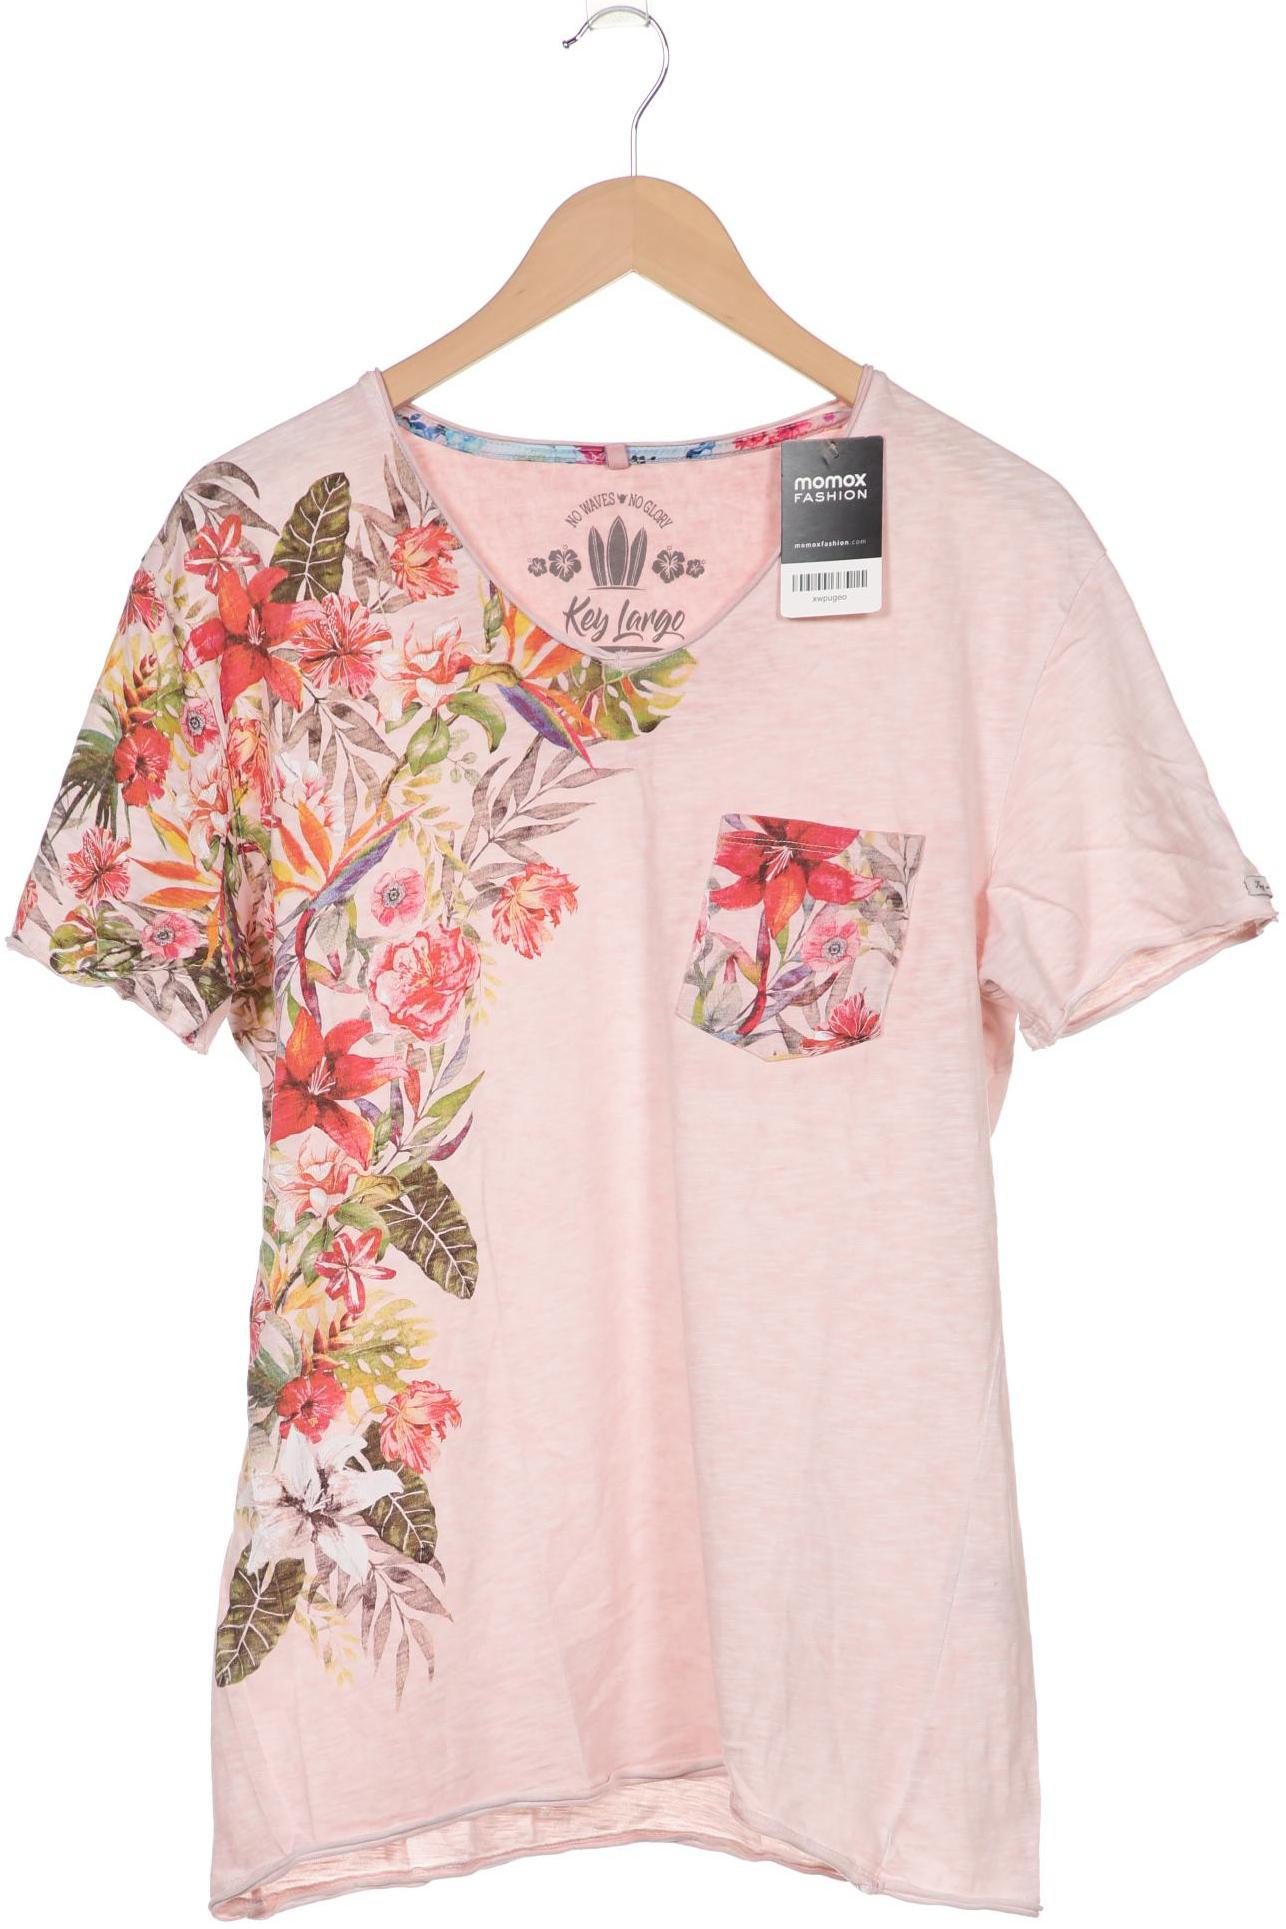 Key Largo Herren T-Shirt, pink von Key Largo